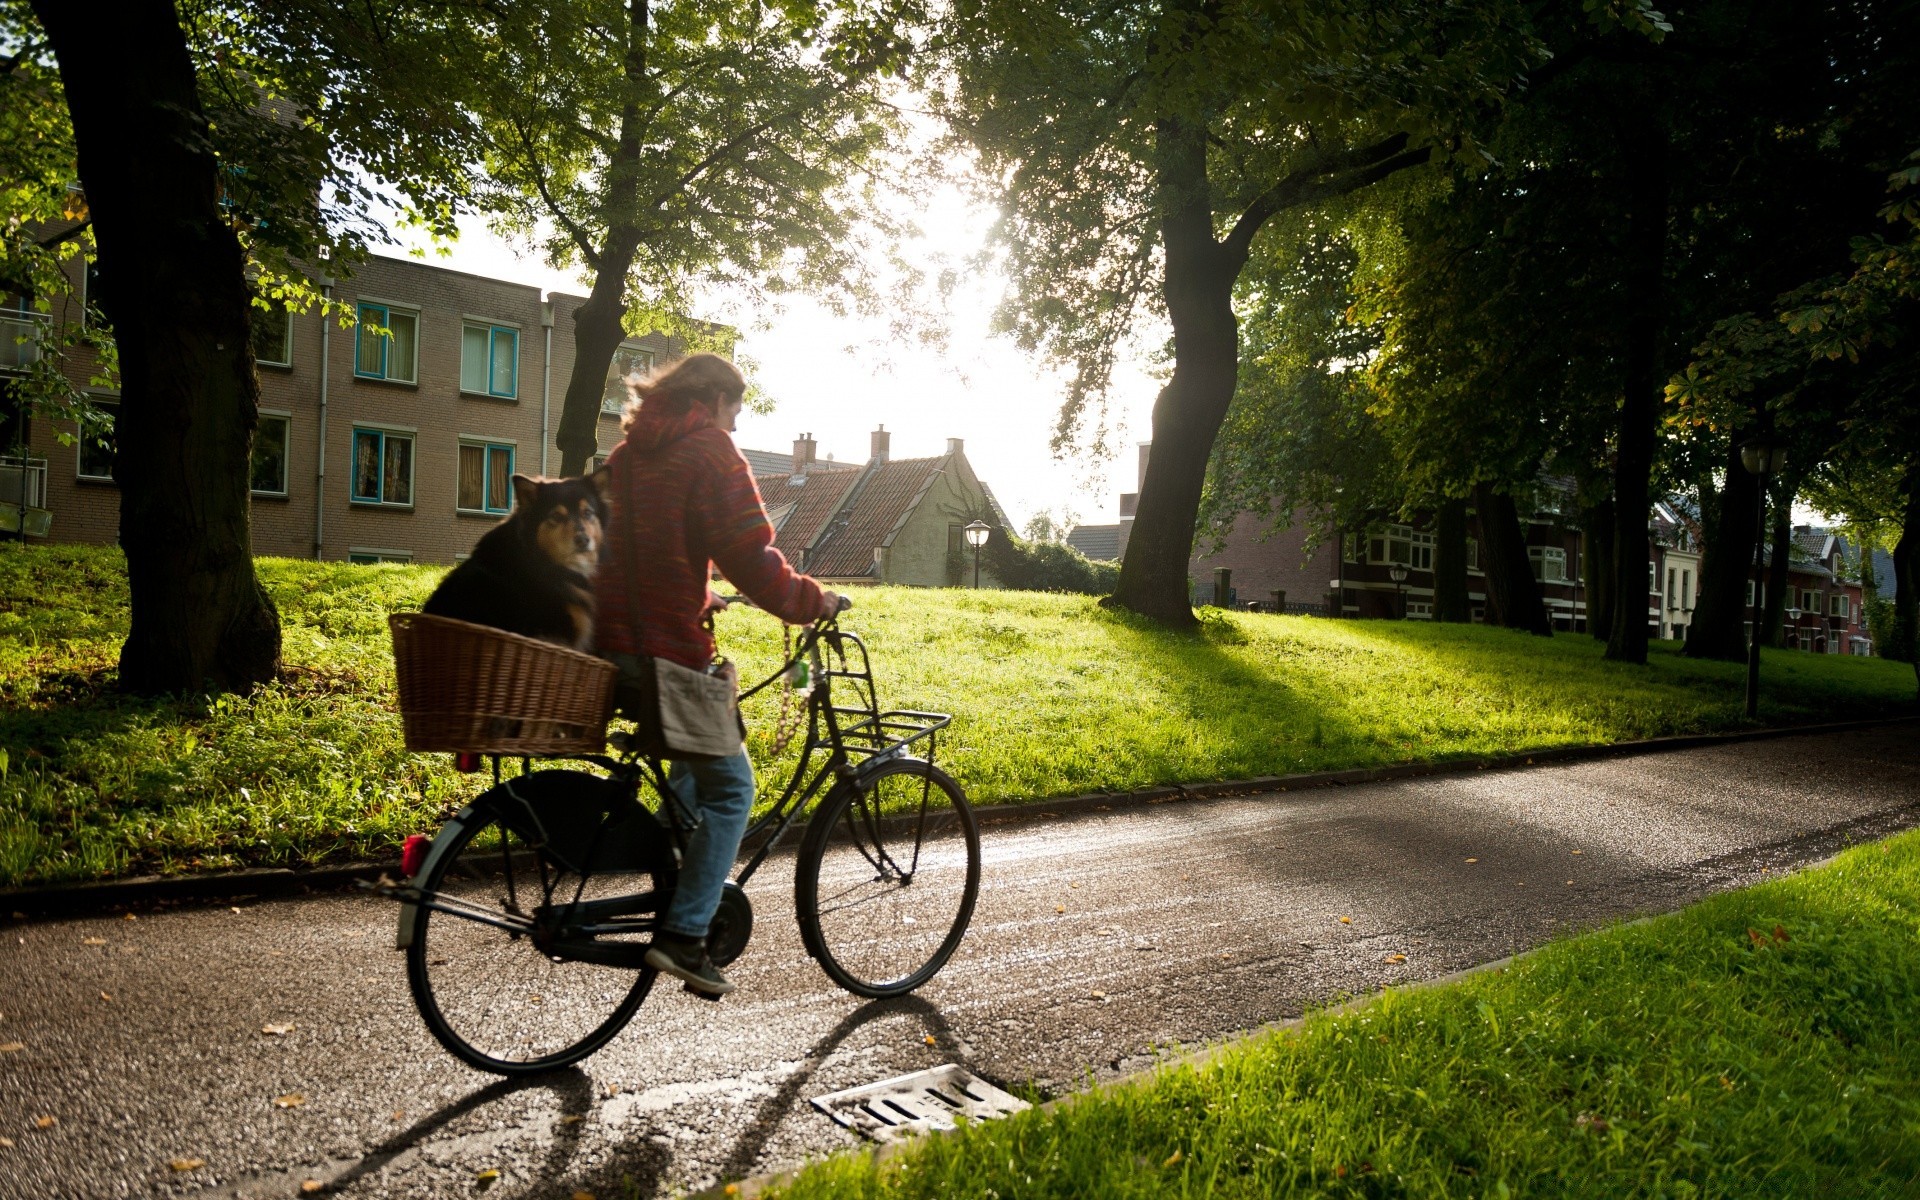 европа дорога колеса парк улица велосипедист трава скамейка дерево транспортная система тротуар велосипед пейзаж на открытом воздухе место